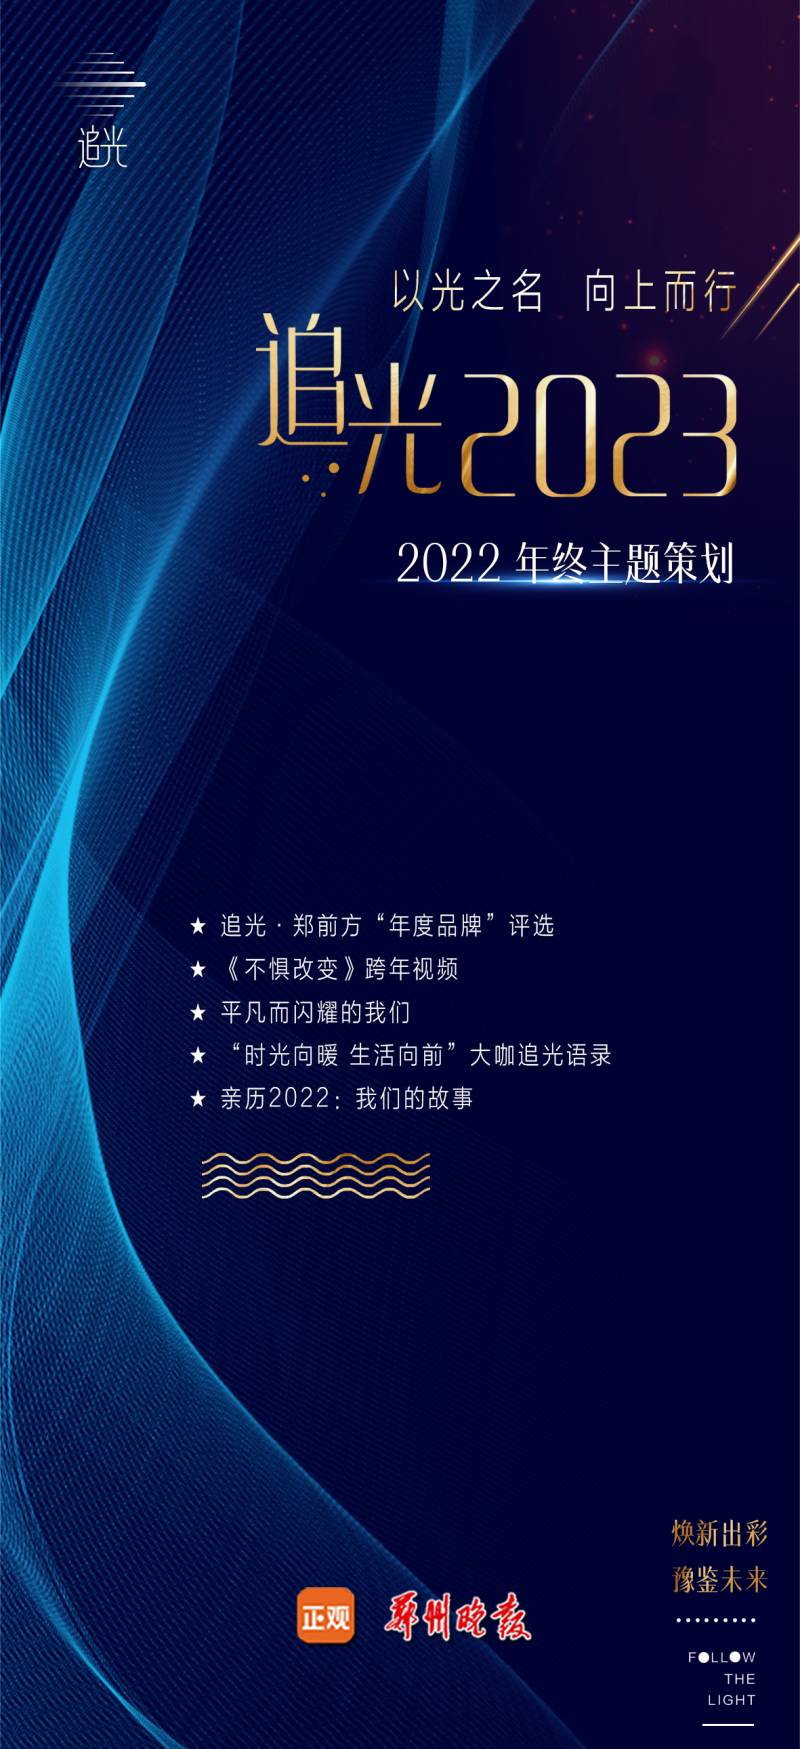 郑州晚报的微博，新年展望2023！携手共进 照亮未来 郑州晚报年终策划亮相